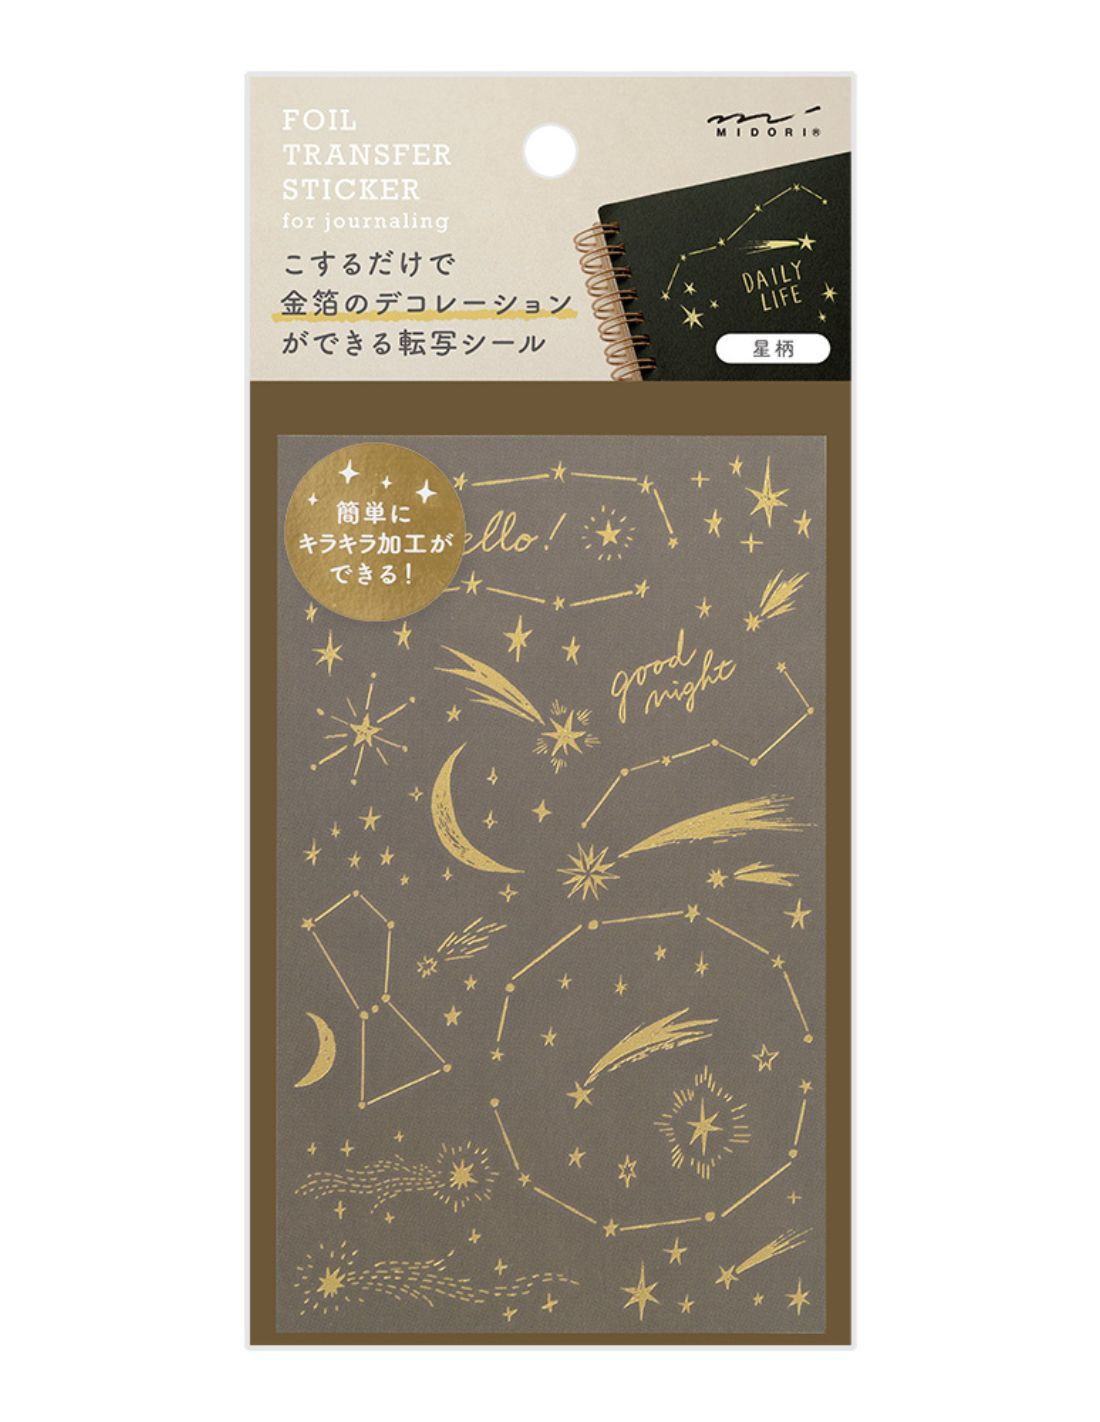 Midori Foil Transfer Stickers - Stars